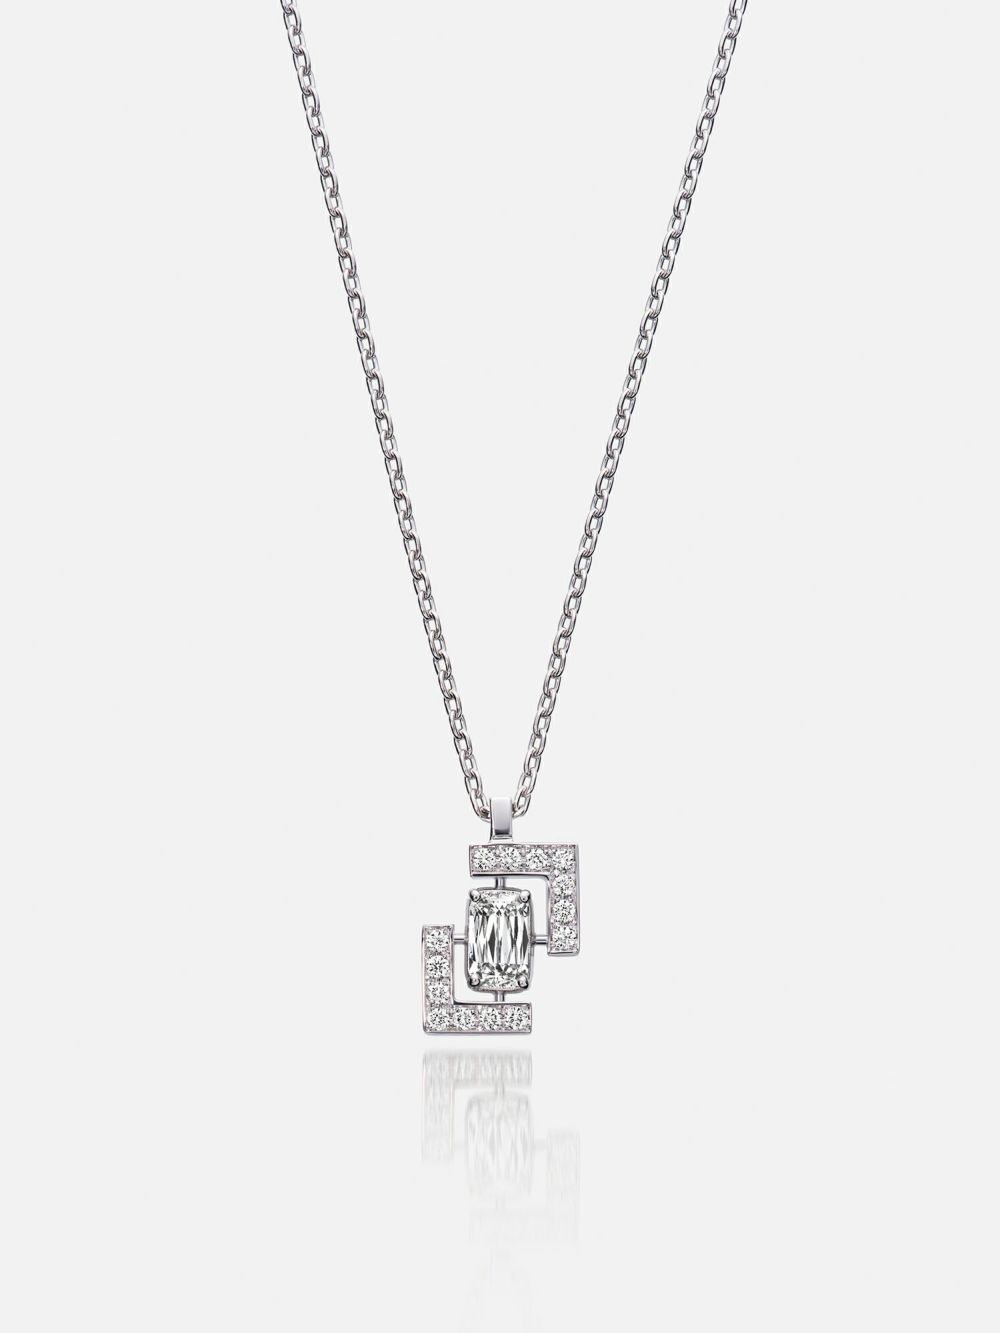 ネックレス〈18KWGダイヤモンド〉 |ネックレス | WAKO公式オンラインブティック | 銀座・和光